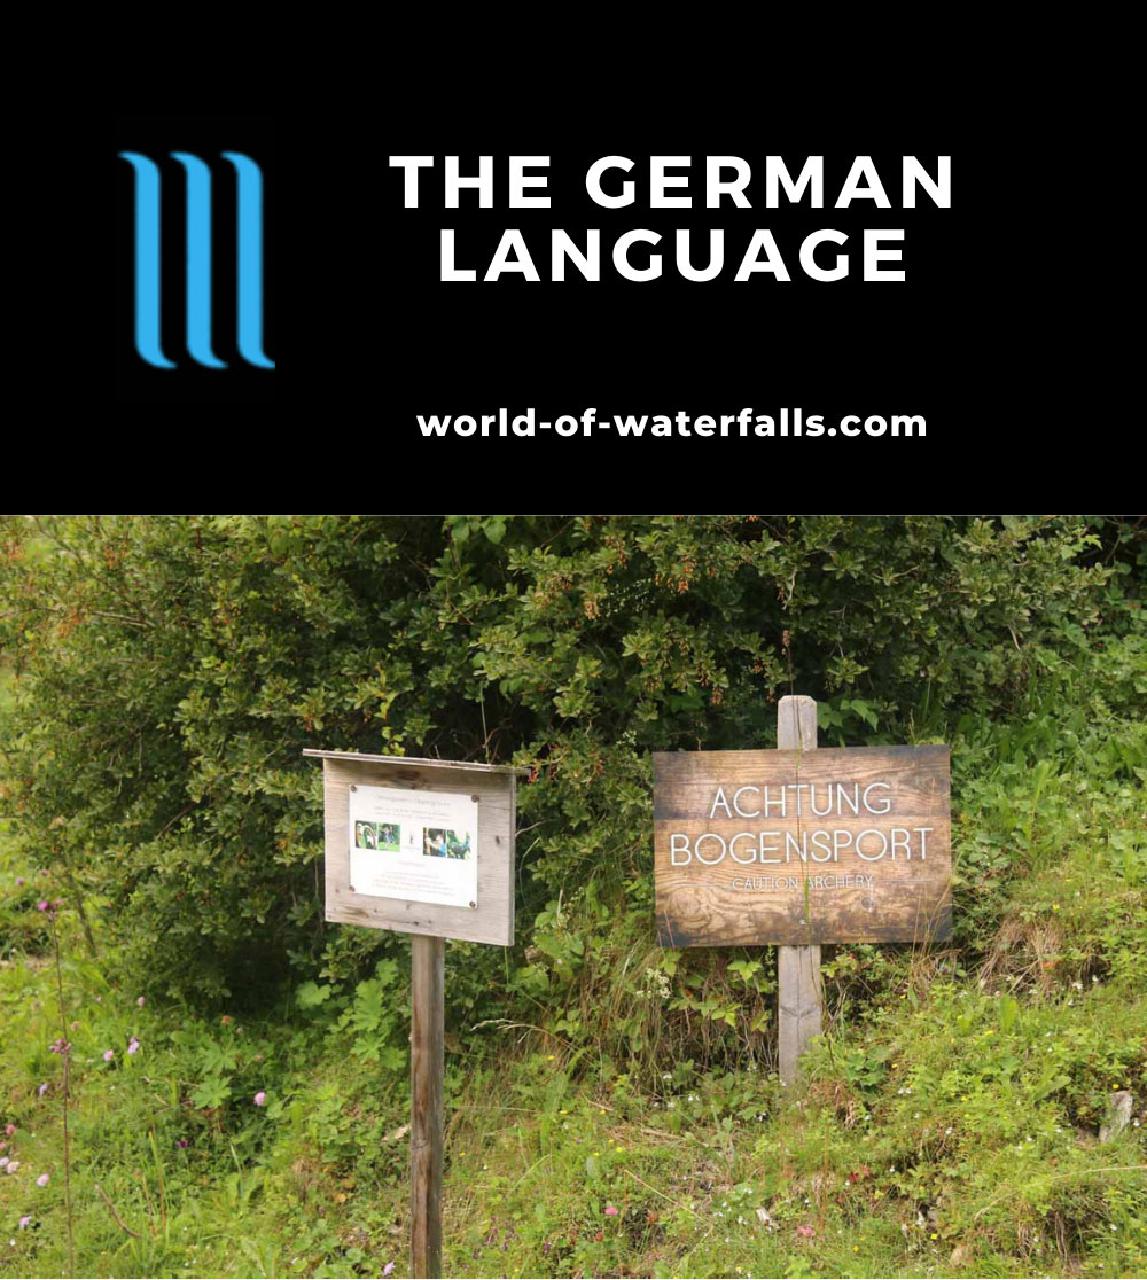 The German Language